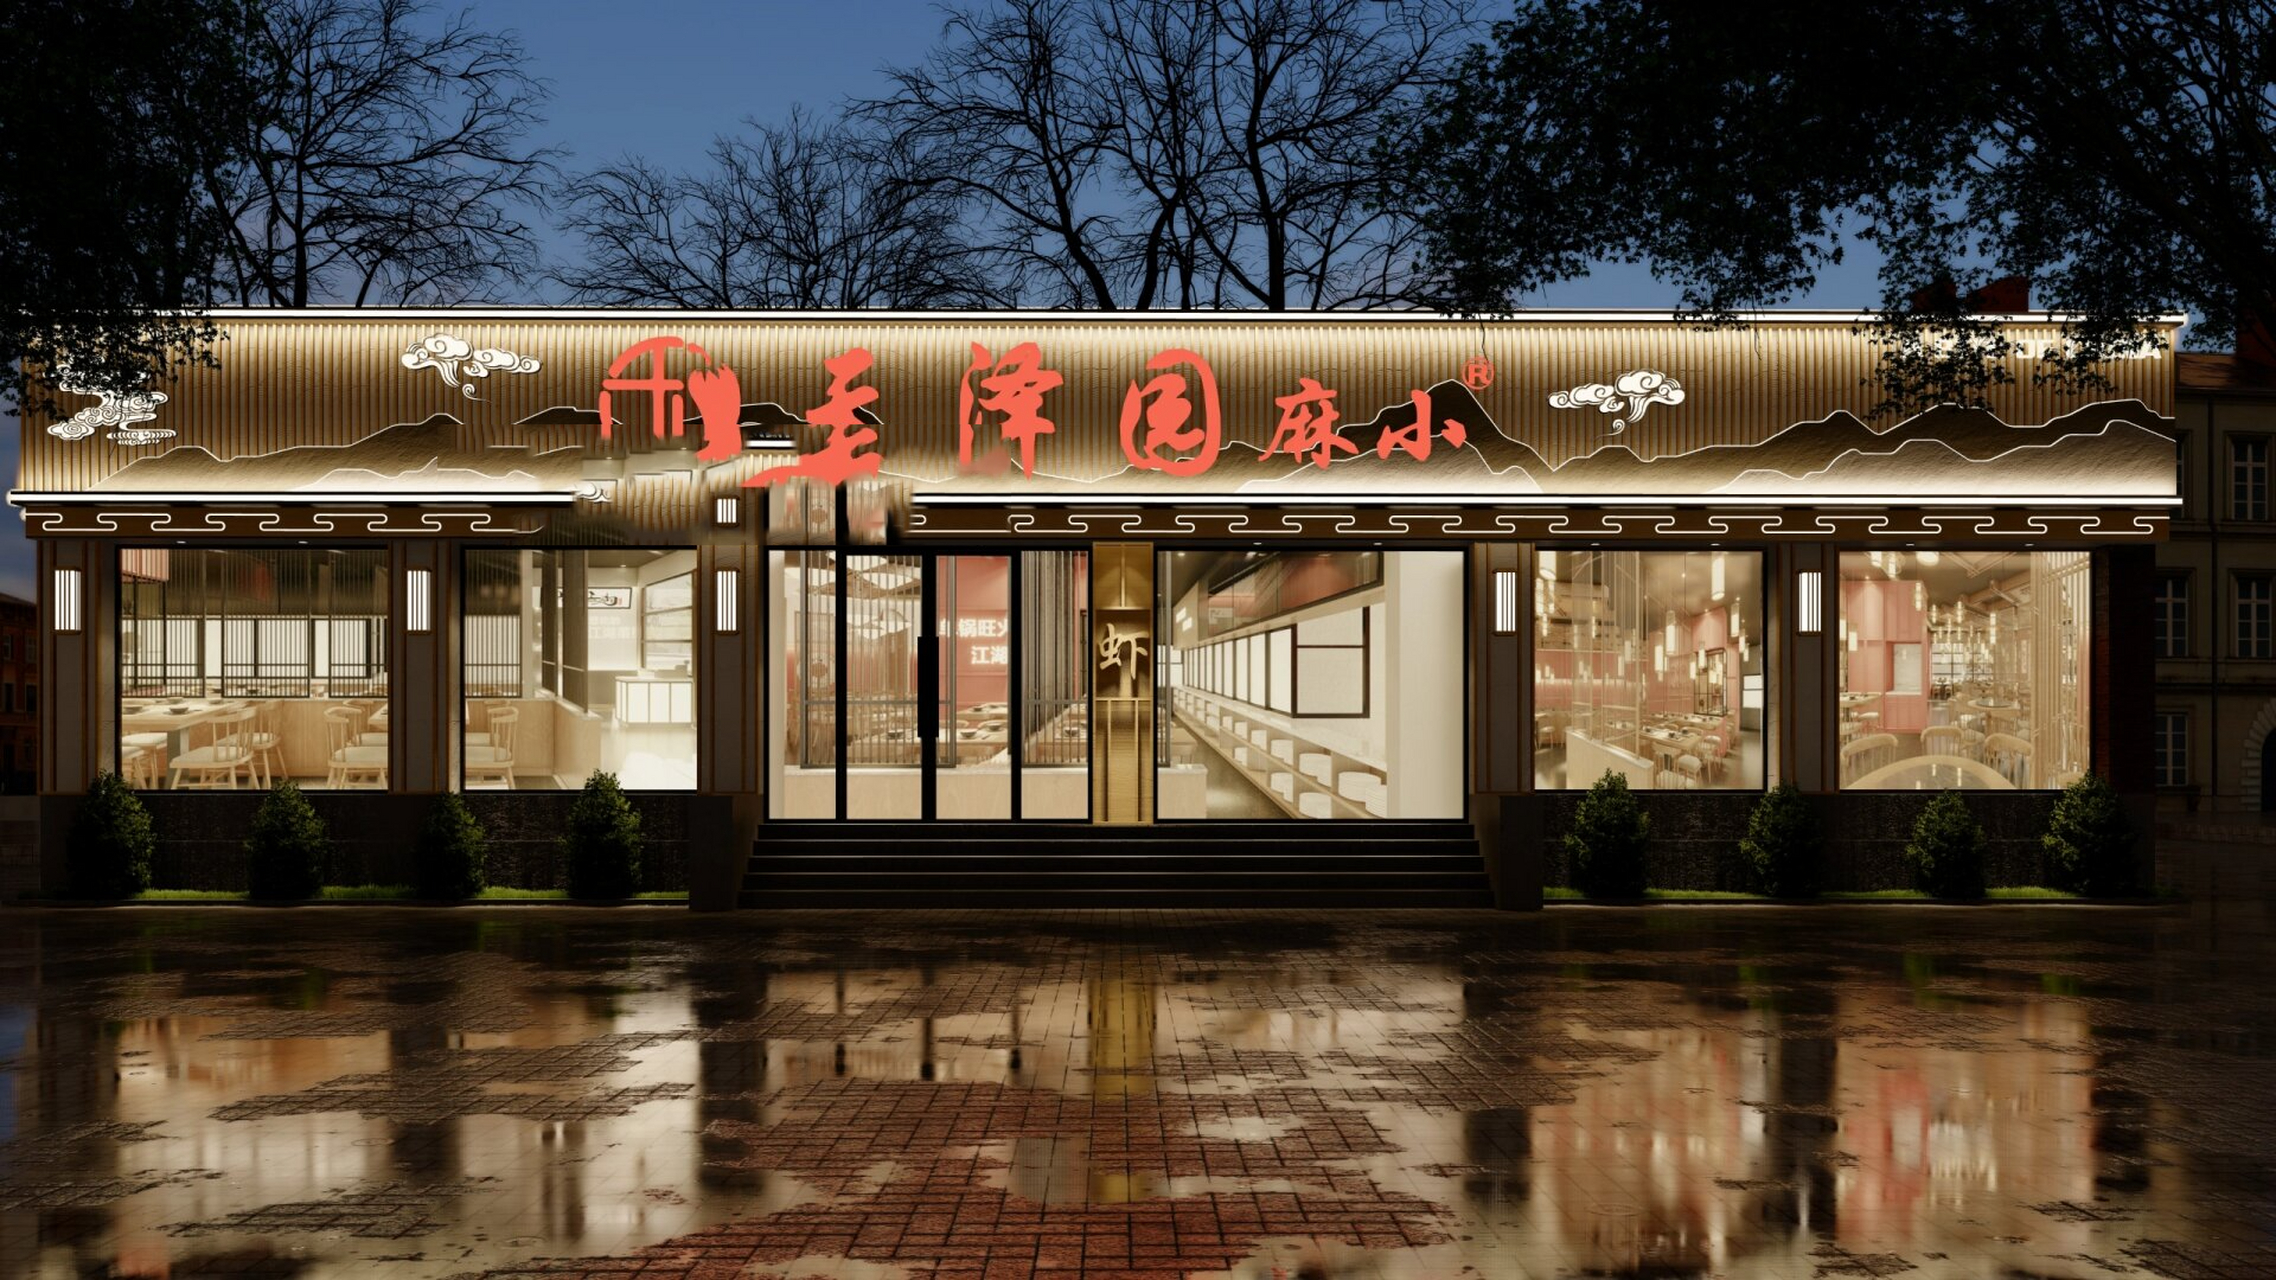 8款中餐馆门头案例(二) 中餐馆门头做中式风格永不过时!